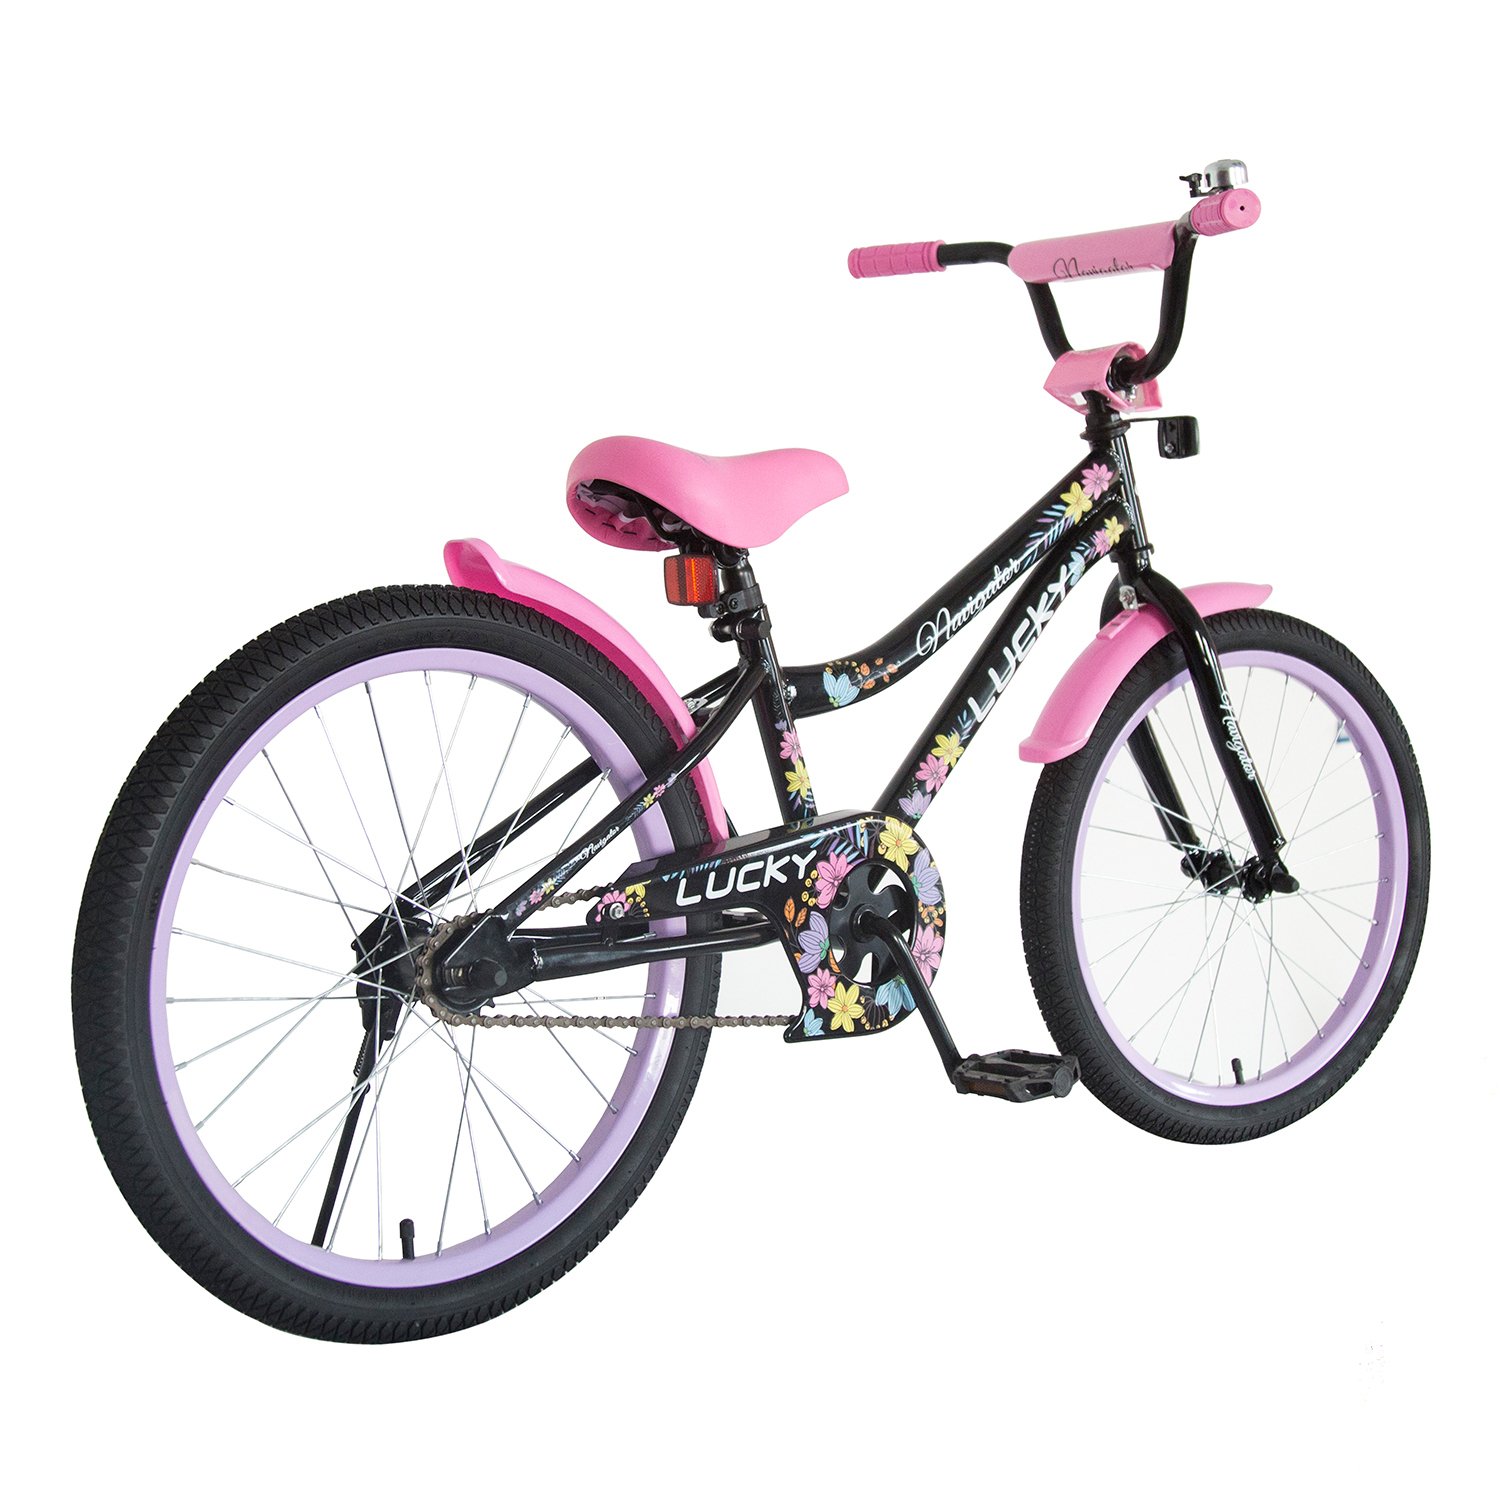 Детский велосипед, Navigator Lucky, колеса 20", стальная рама, стальные обода, ножной тормоз, защитная накладка на руле и выносе  